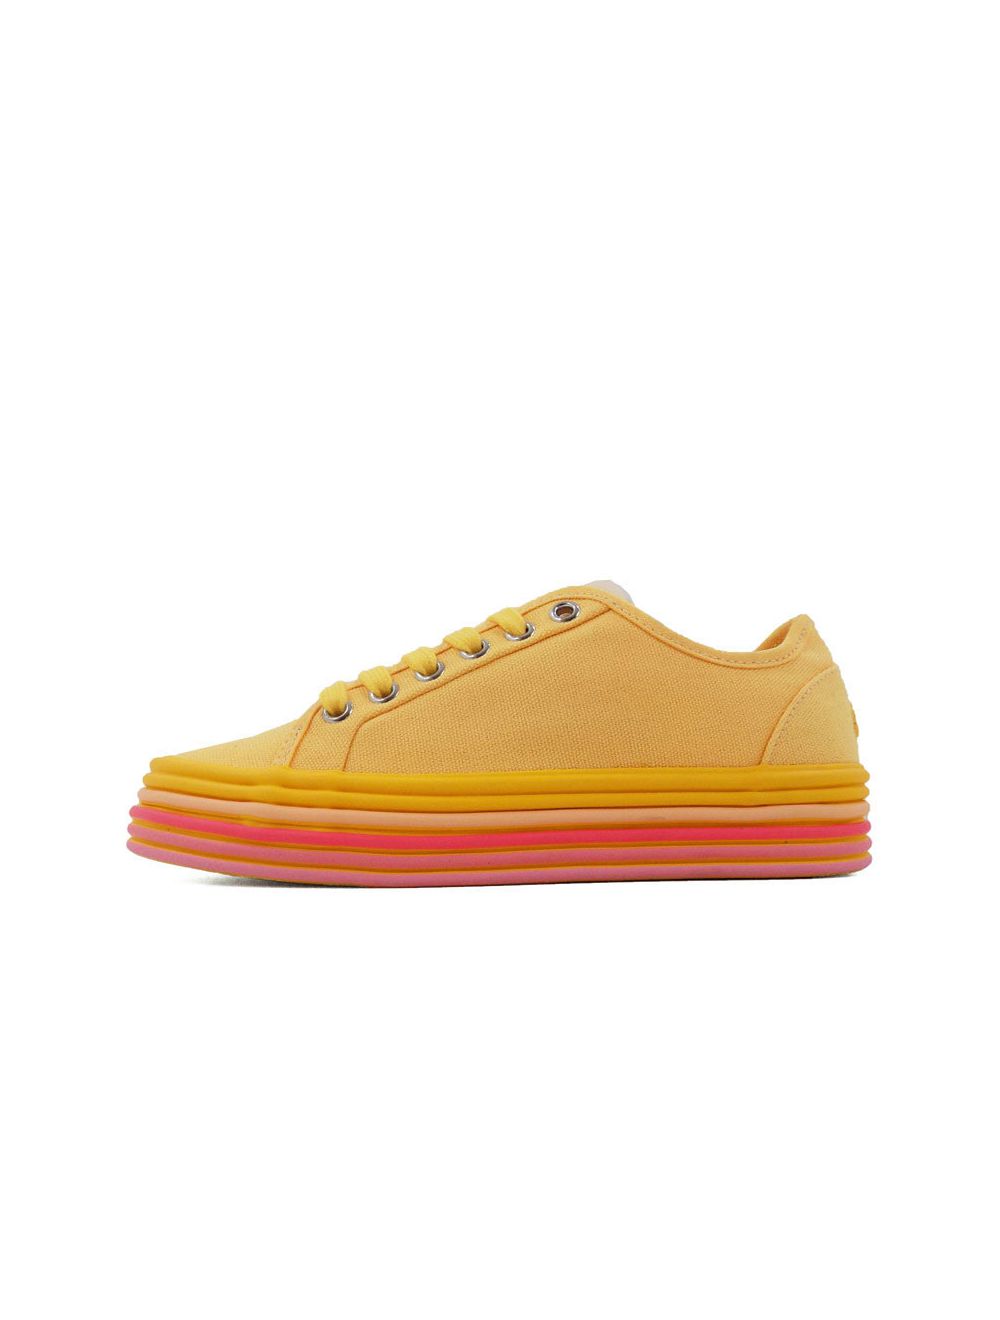 ellesse yellow sneakers